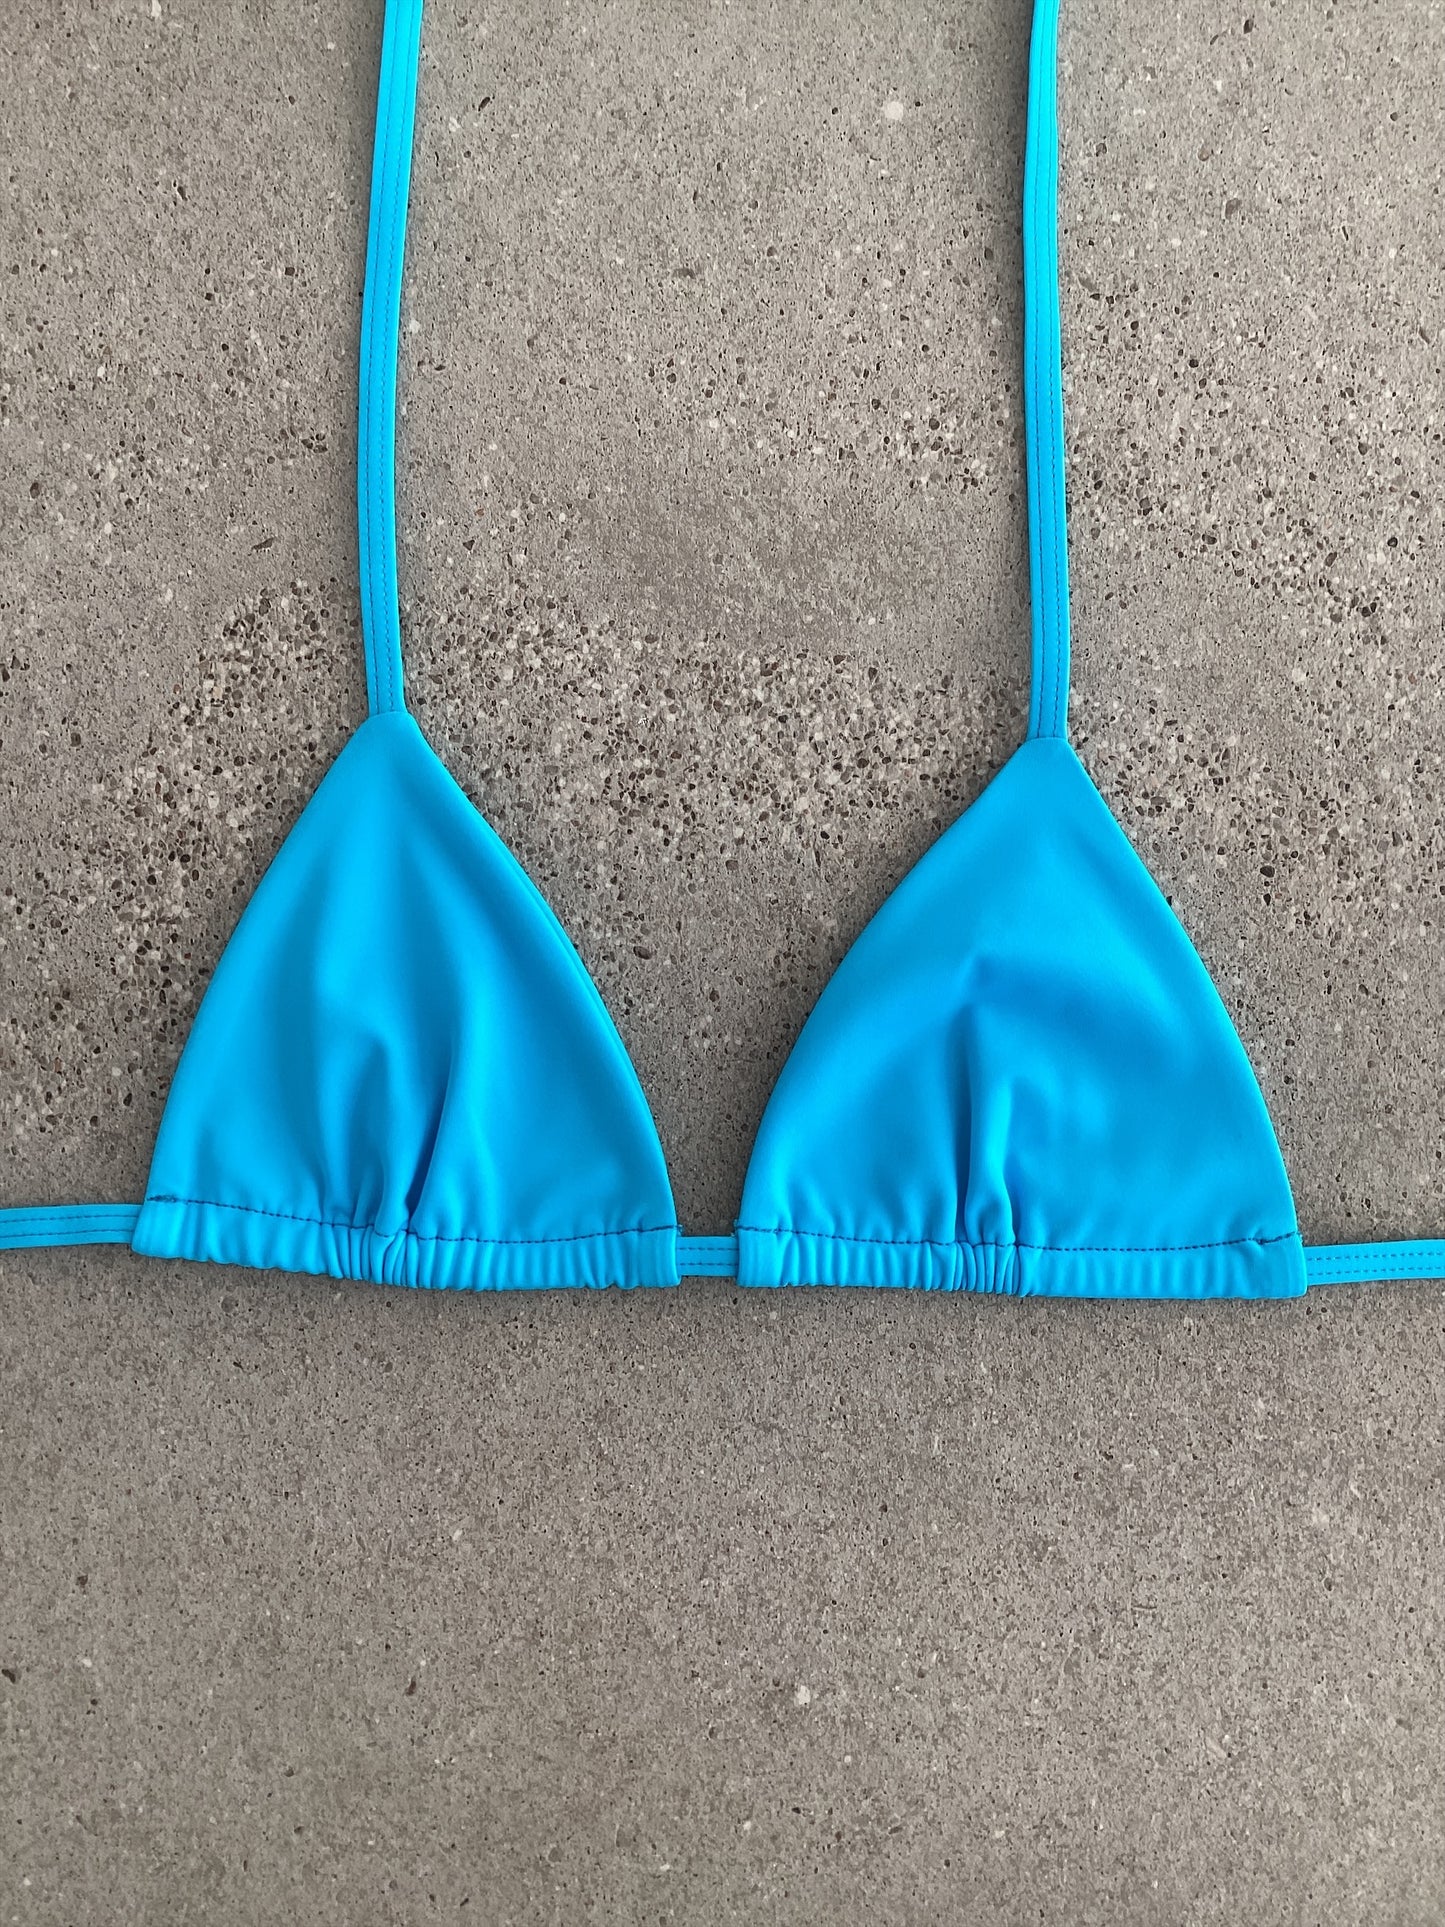 Aqua Bikini Top